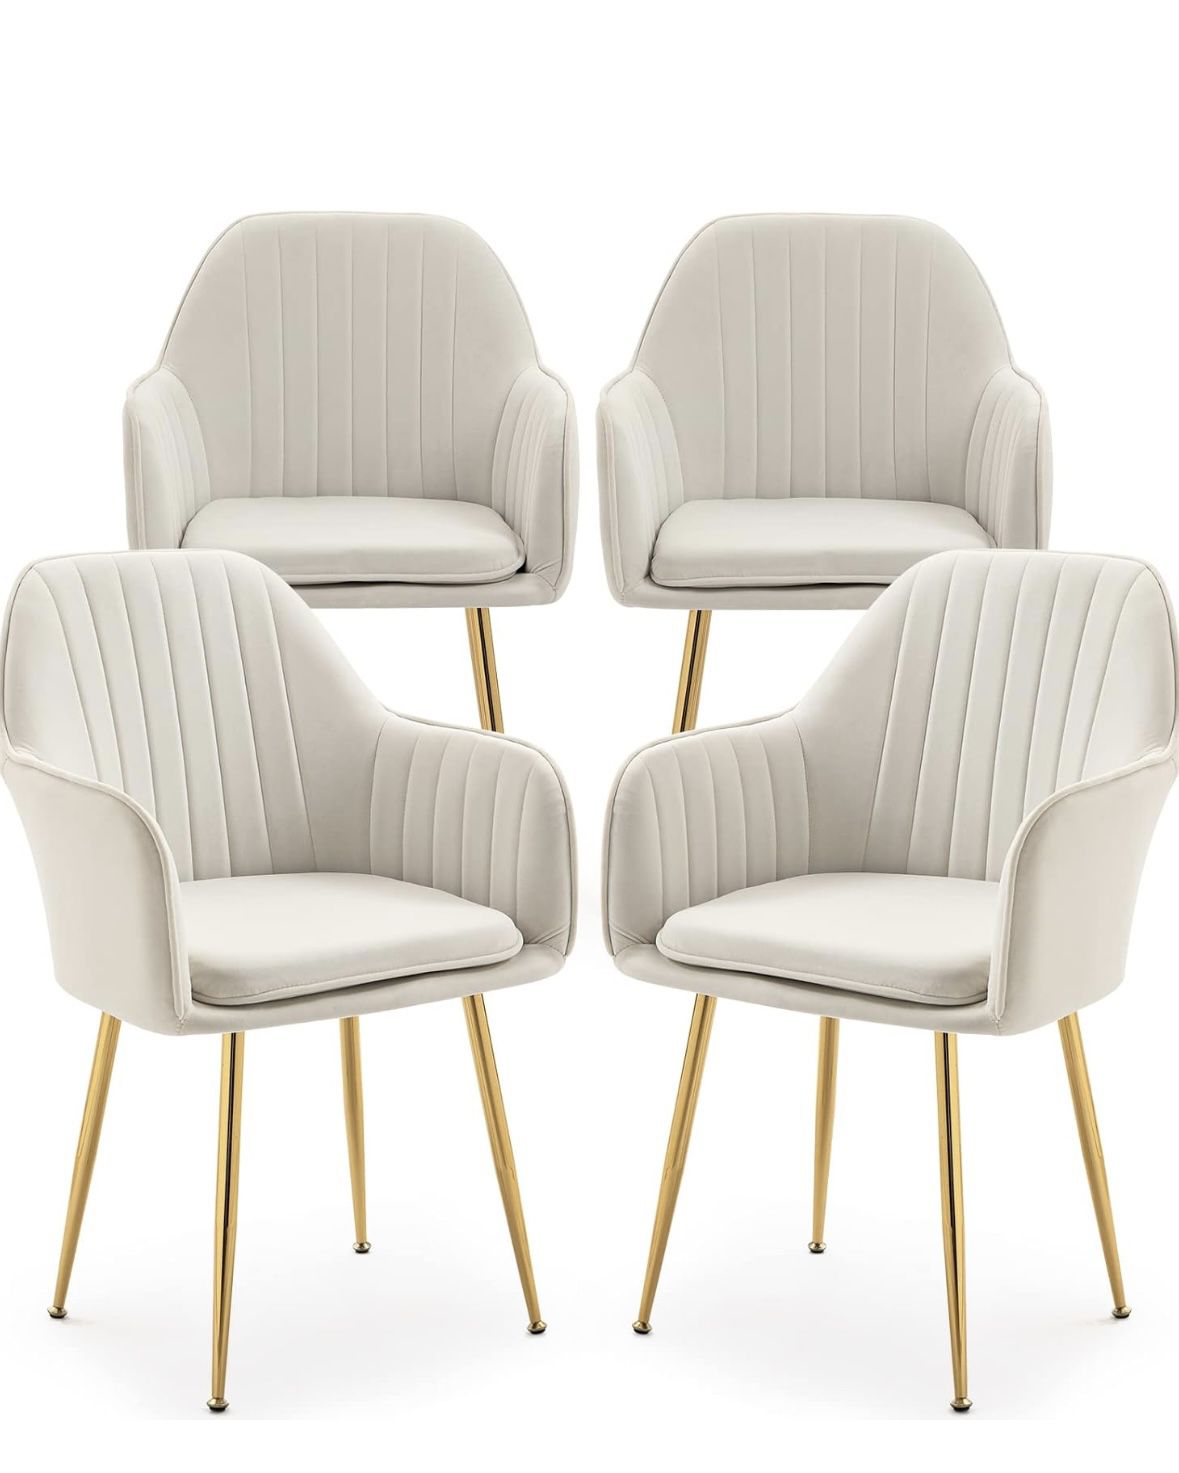 Arm Chairs Set of 4, Velvet Mid-Century Upholstered Seat, Golden Legs, Light Beige